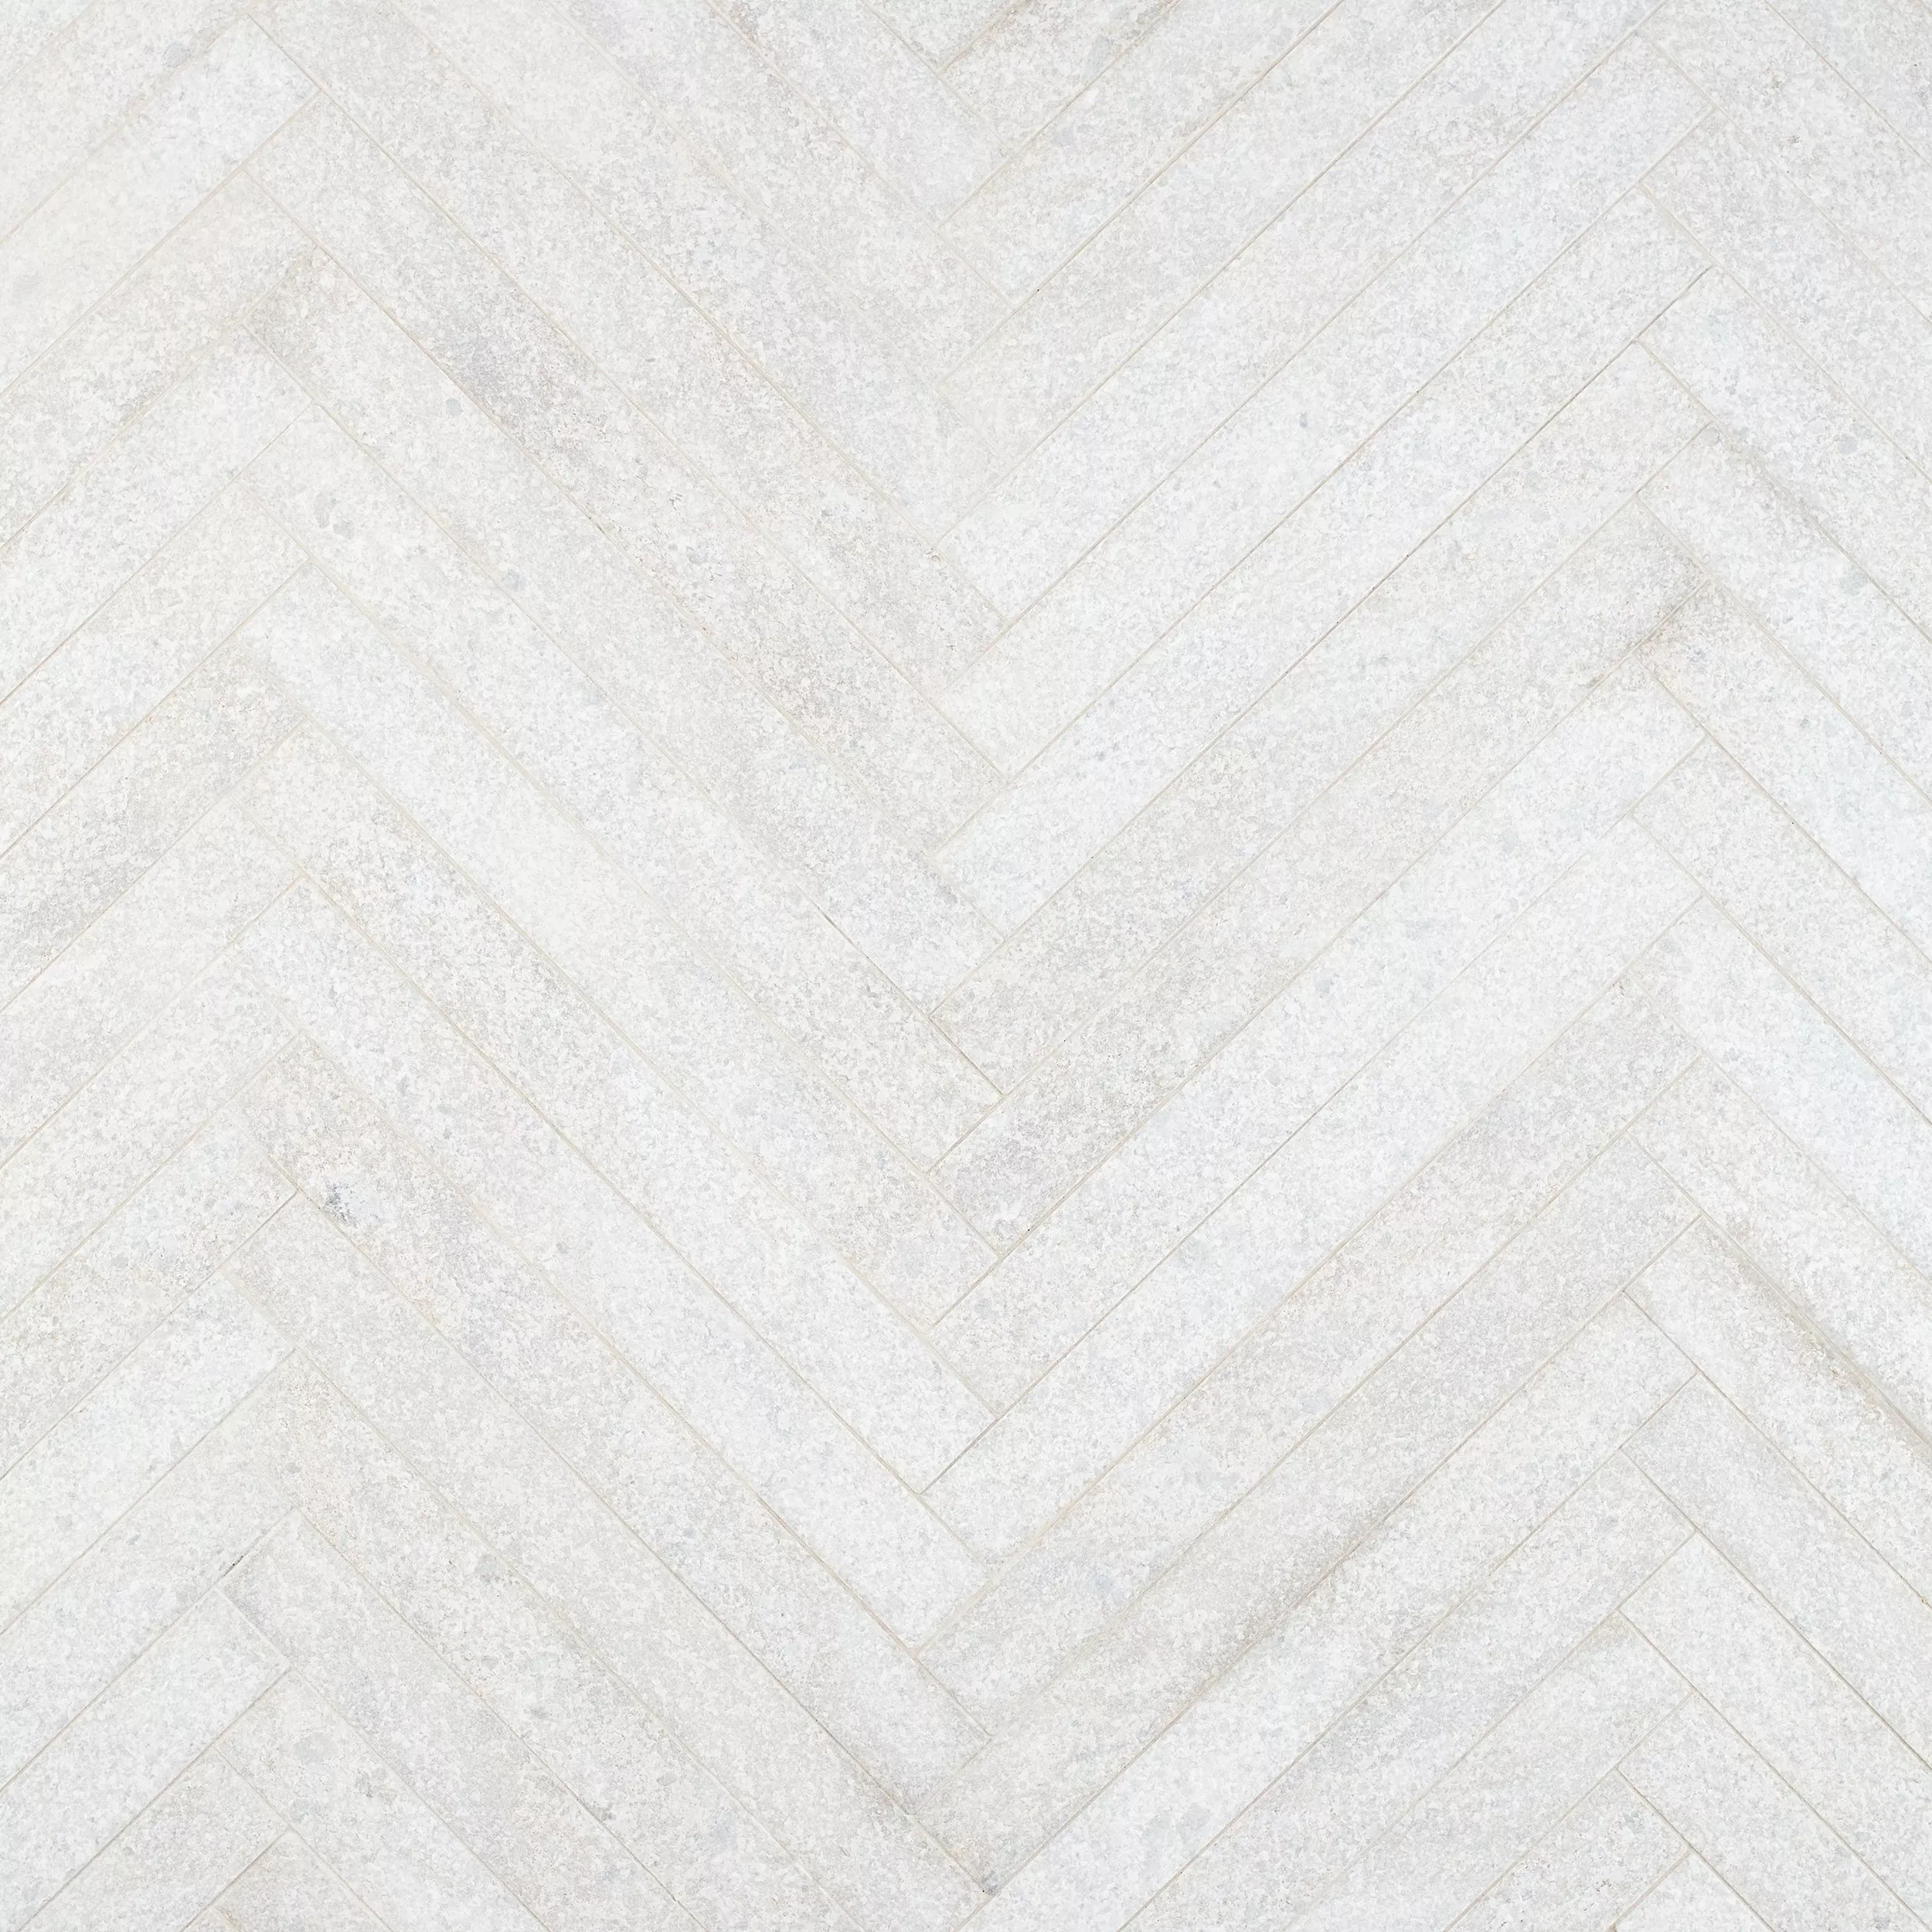 Navarre White Quartzite Tile